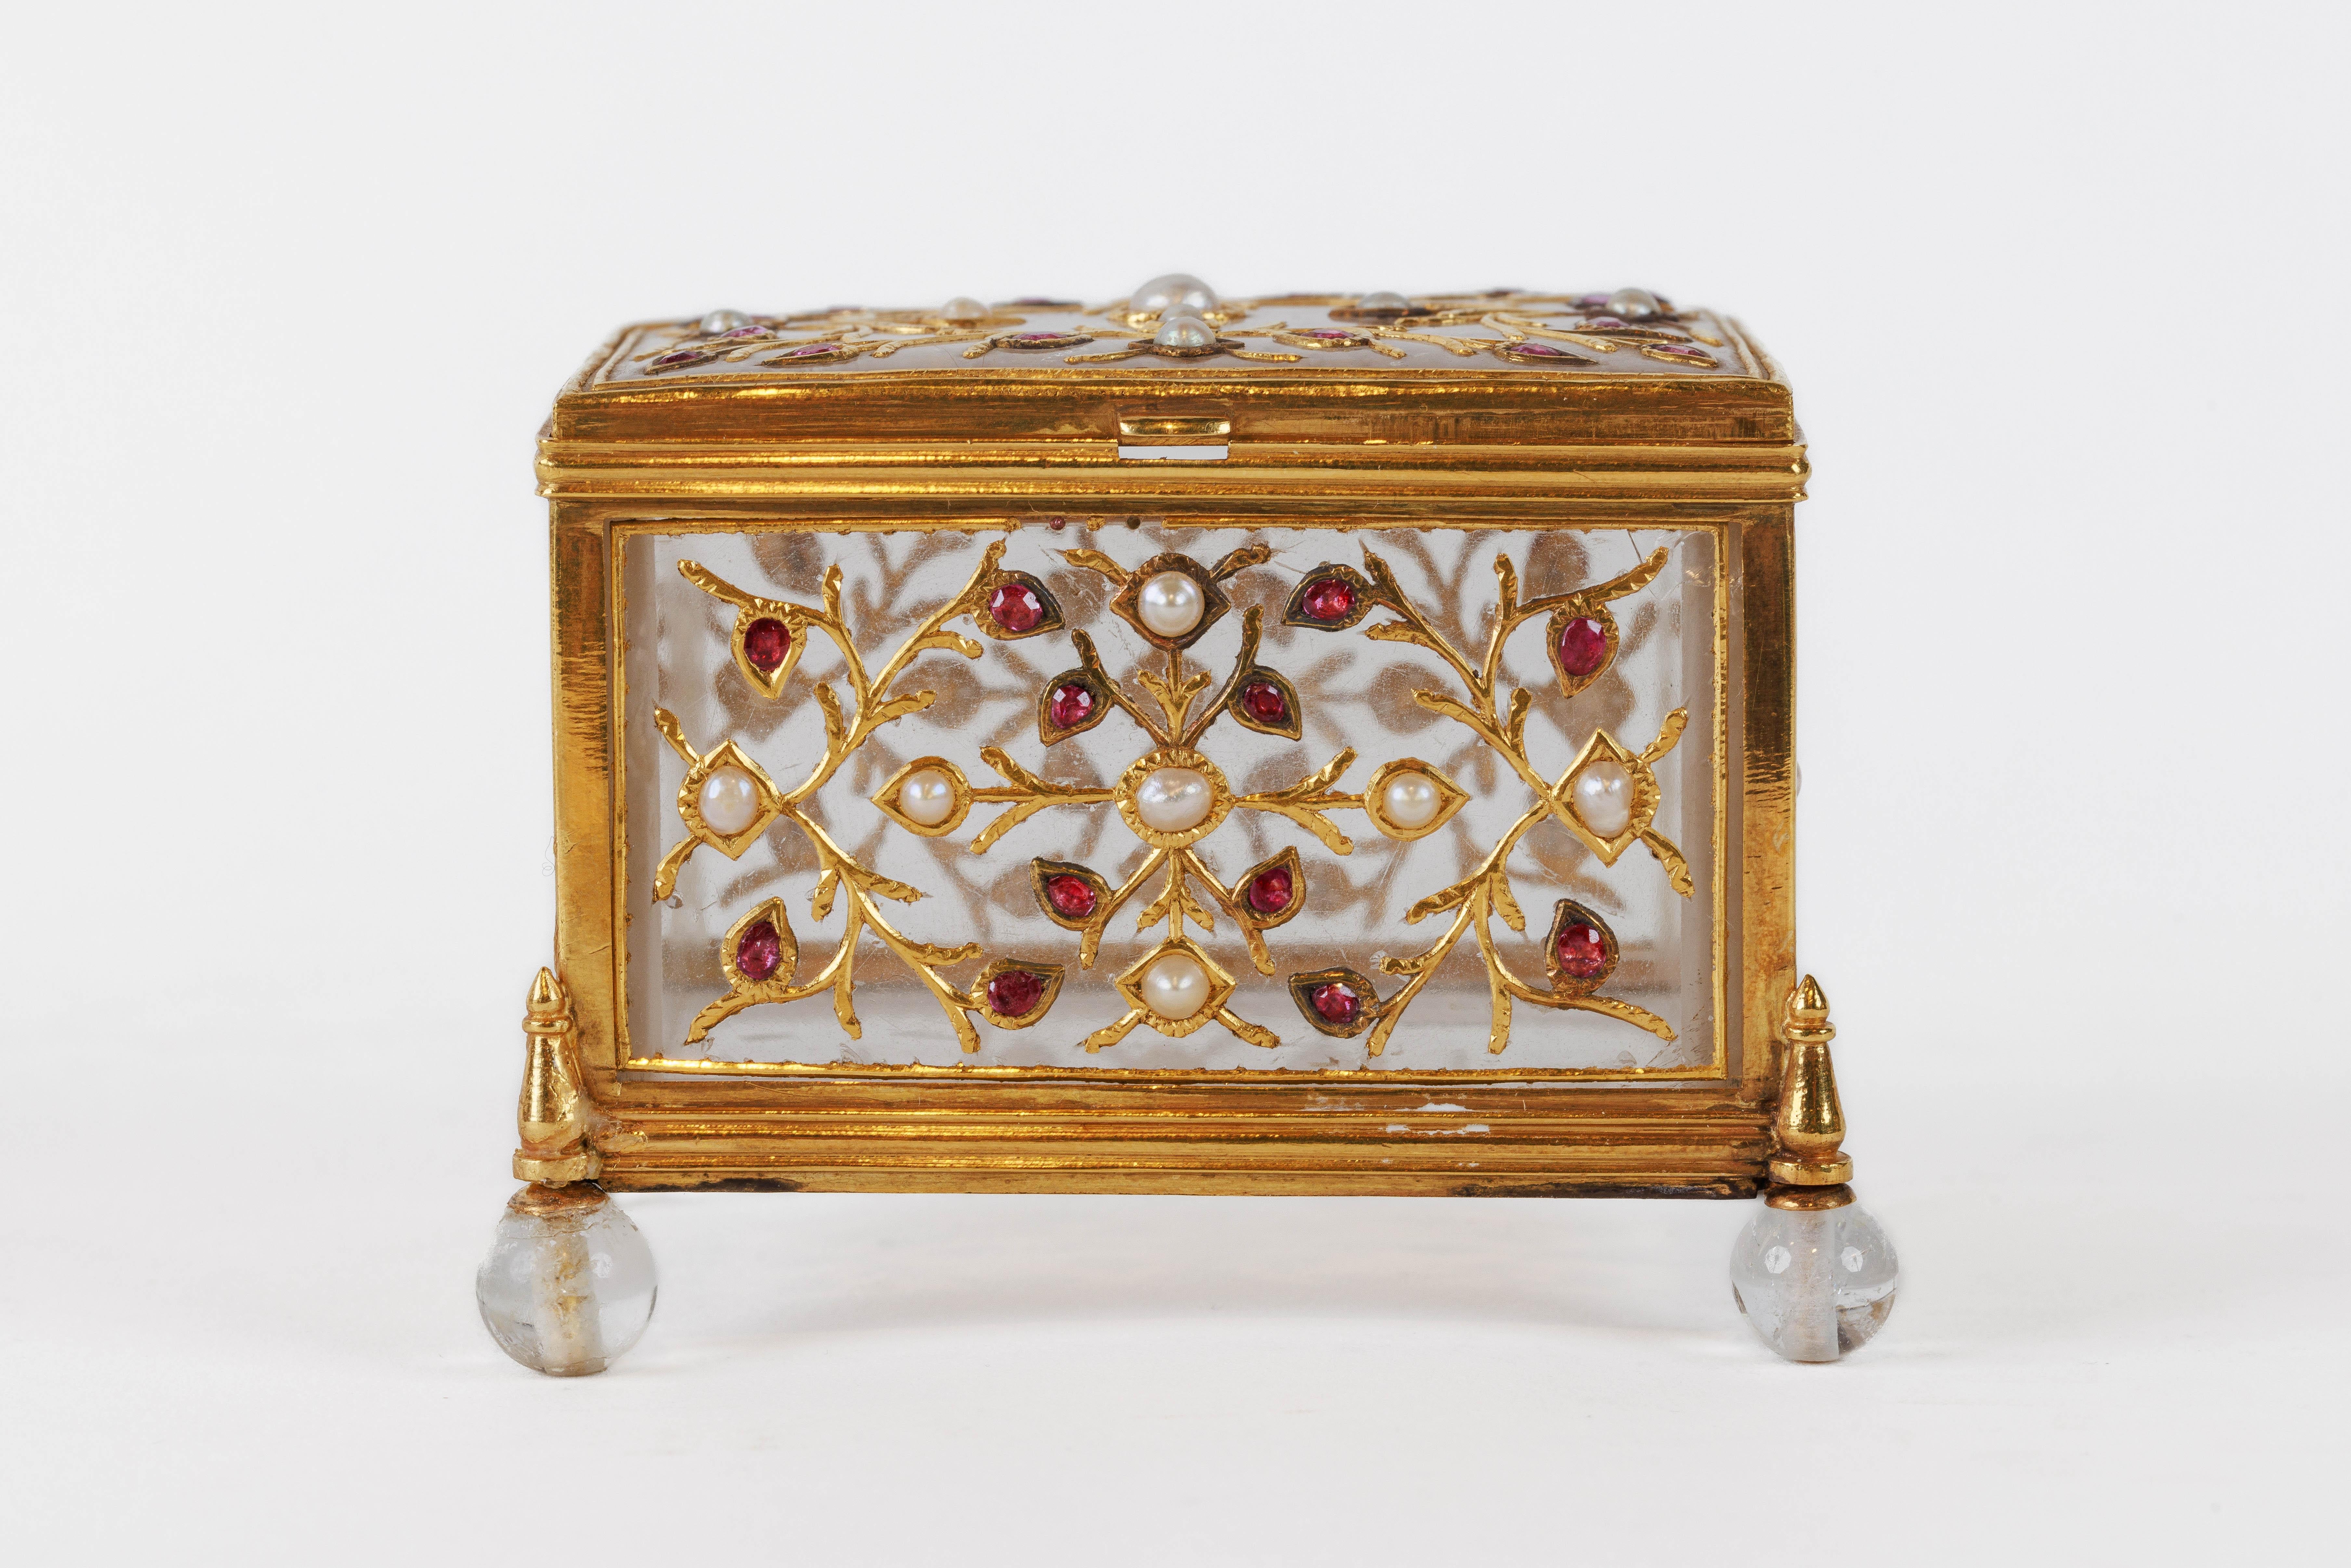 Eine feine und exquisite Mughal Edelstein-Set Bergkristall und Gold-Box, Indien, 18. Jahrhundert.

Finley, gefasst in 22 Karat Gold, mit Rubinen und Perlen besetzt. Der Korpus ist aus einem Stück Bergkristall geschnitzt, mit Rubinen und Perlen in